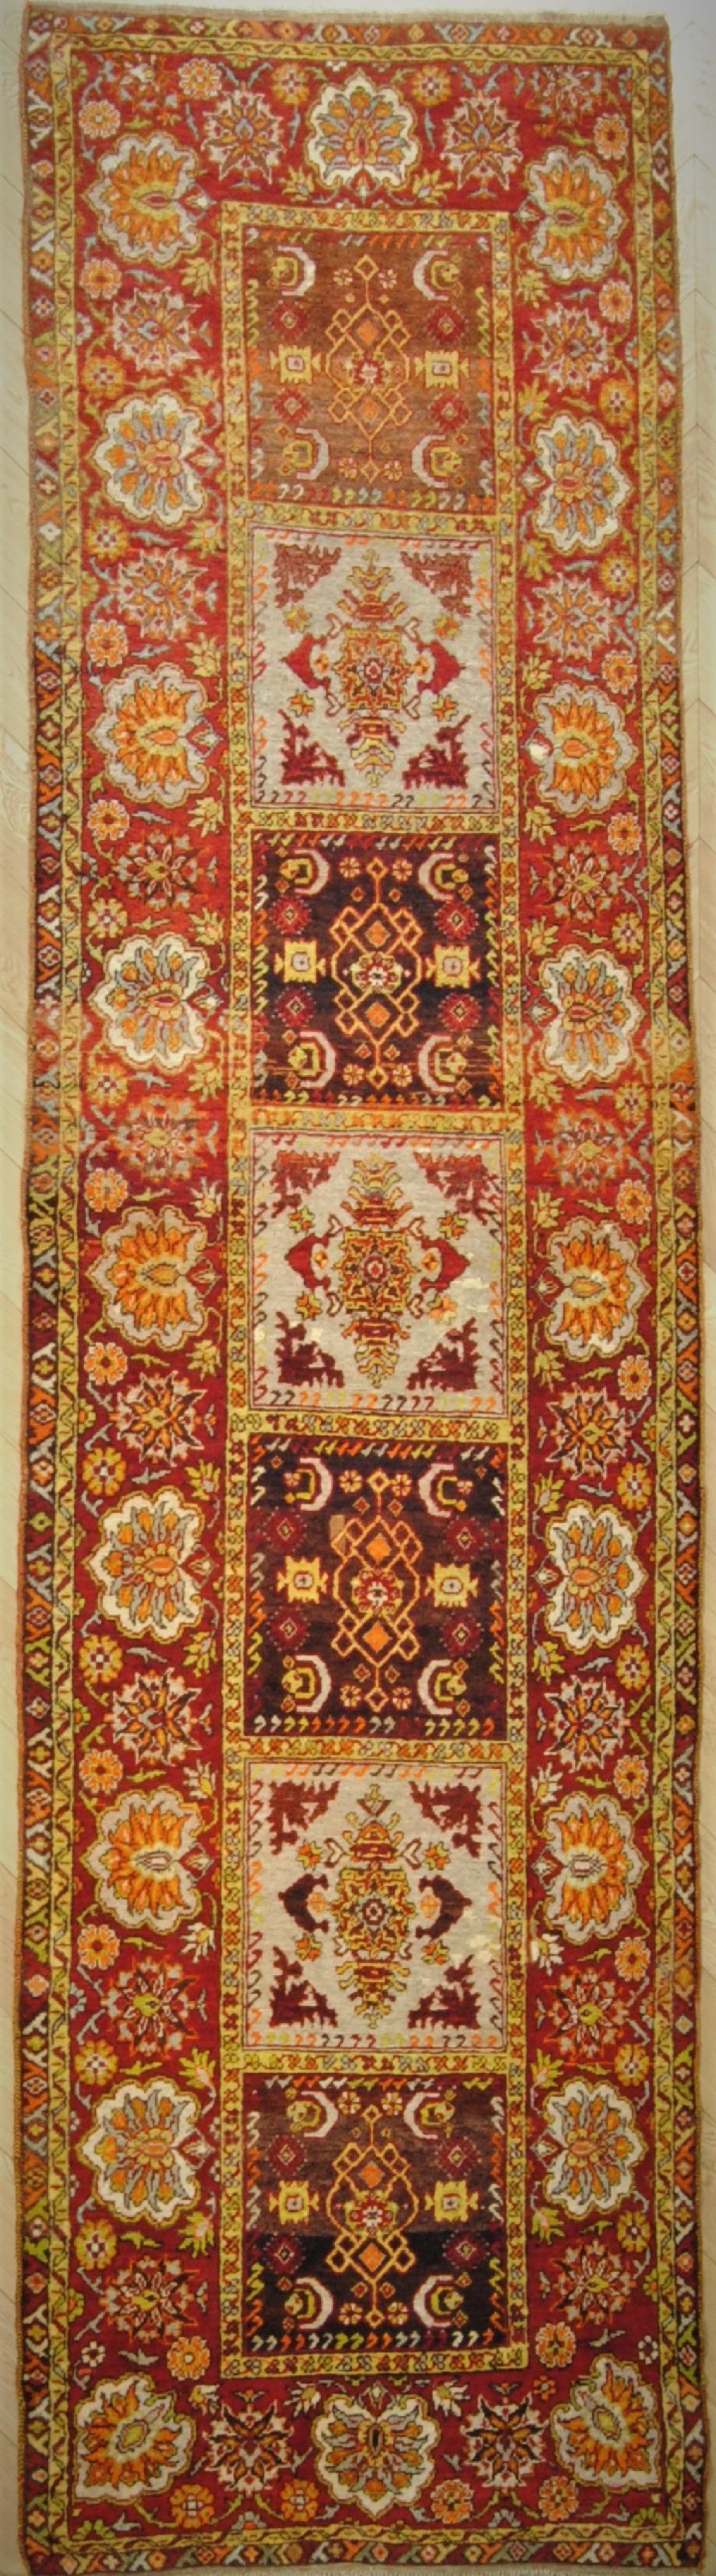 Ce beau tapis anatolien provient de la région de FETHIYE sur la côte ouest. Ses principales caractéristiques, outre la laine douce et brillante, sont les couleurs chaudes de la terre et la décoration qui est plus gracieuse que celle des autres tapis